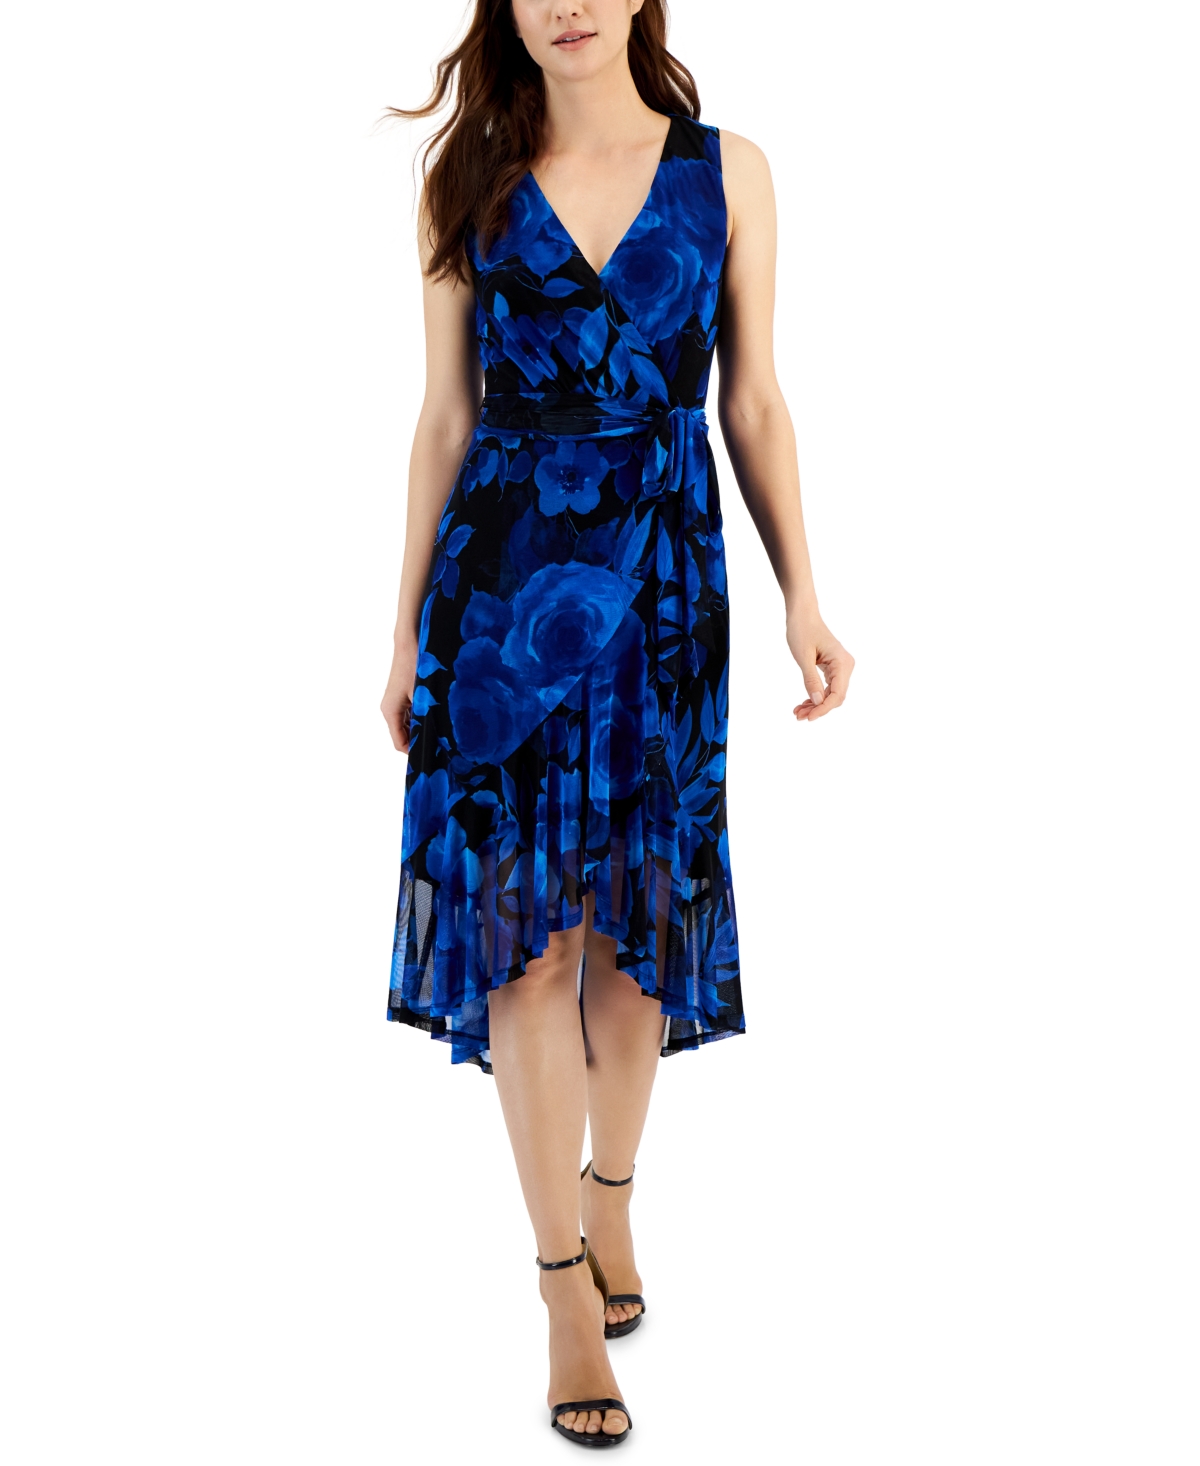 Women's Printed Ruffled-Hem Tie-Waist Wrap Dress - Cobalt Blue